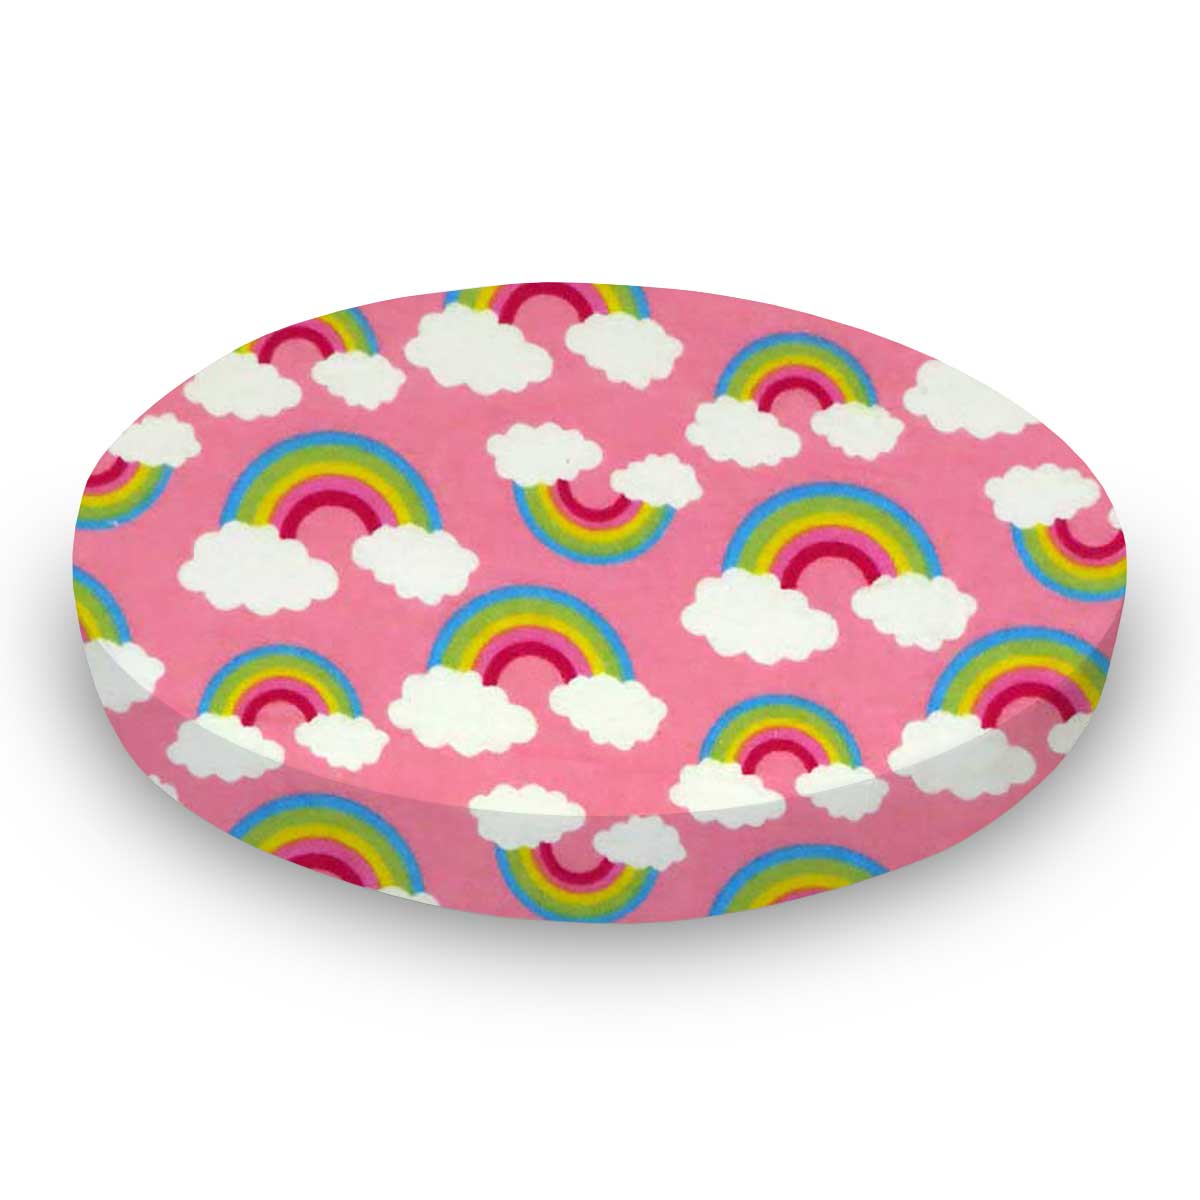 Oval Crib (Stokke Sleepi) - Rainbows Pink - Fitted  Oval